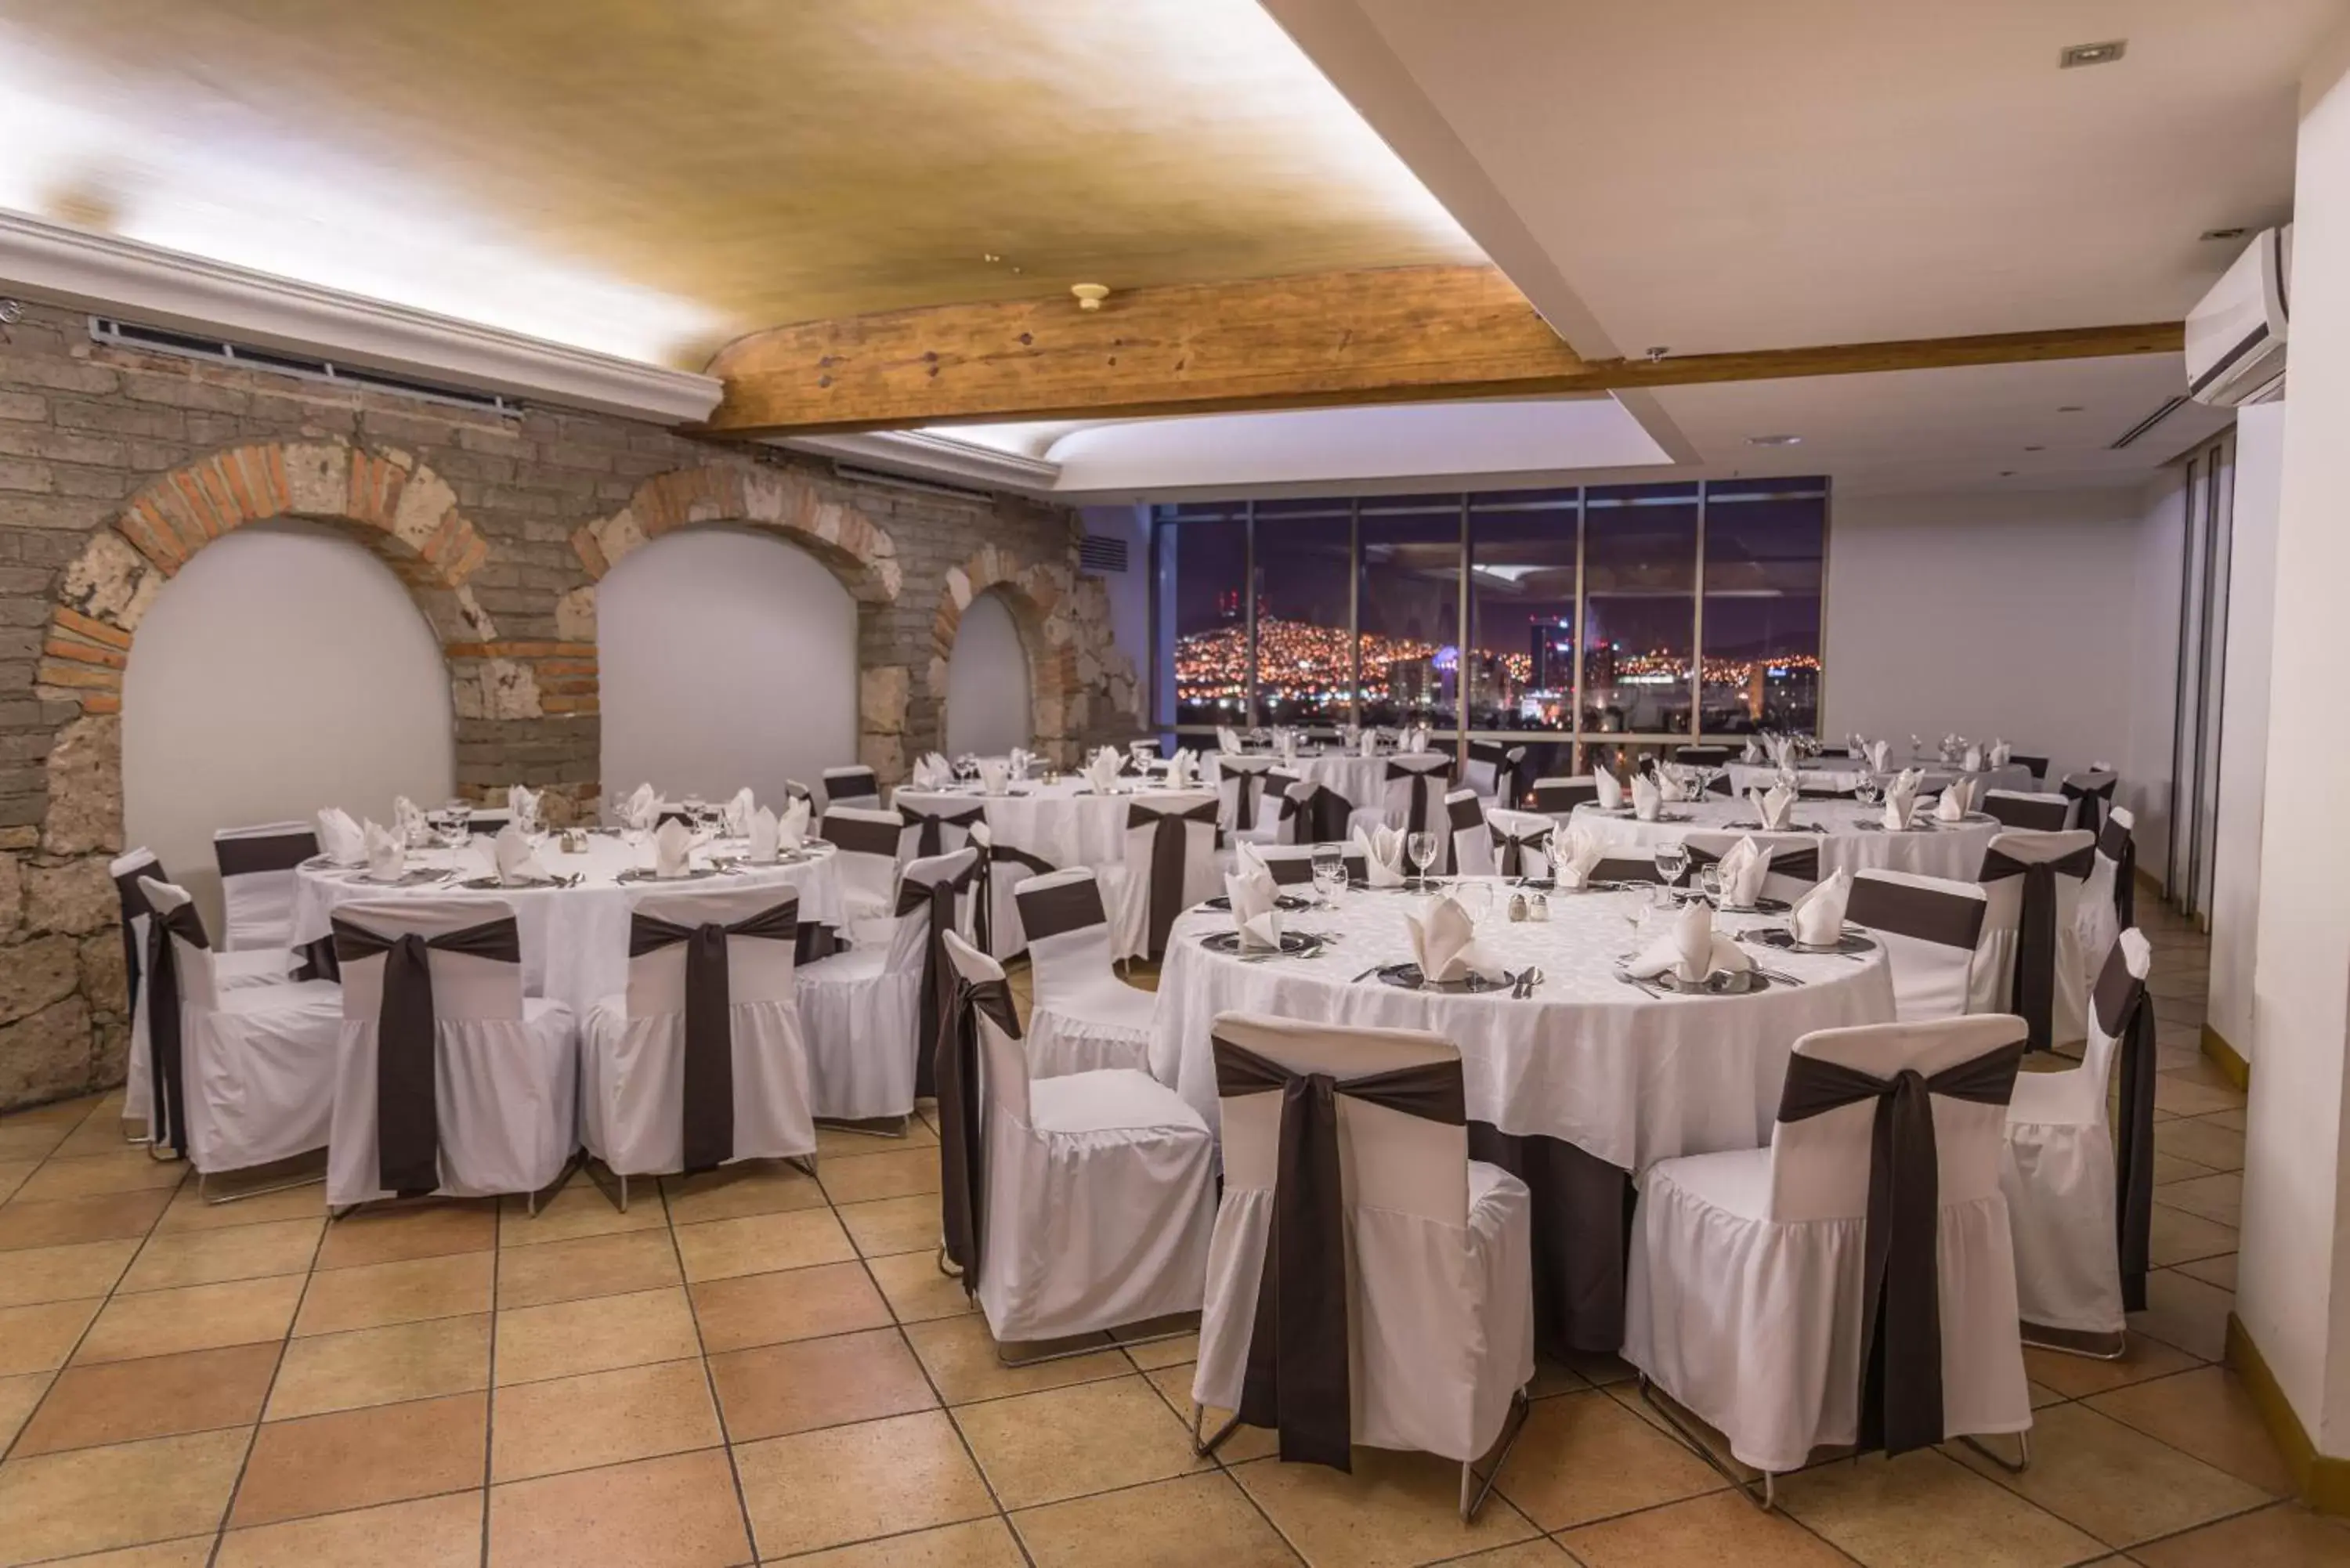 Banquet/Function facilities, Banquet Facilities in Holiday Inn Guadalajara Select, an IHG Hotel